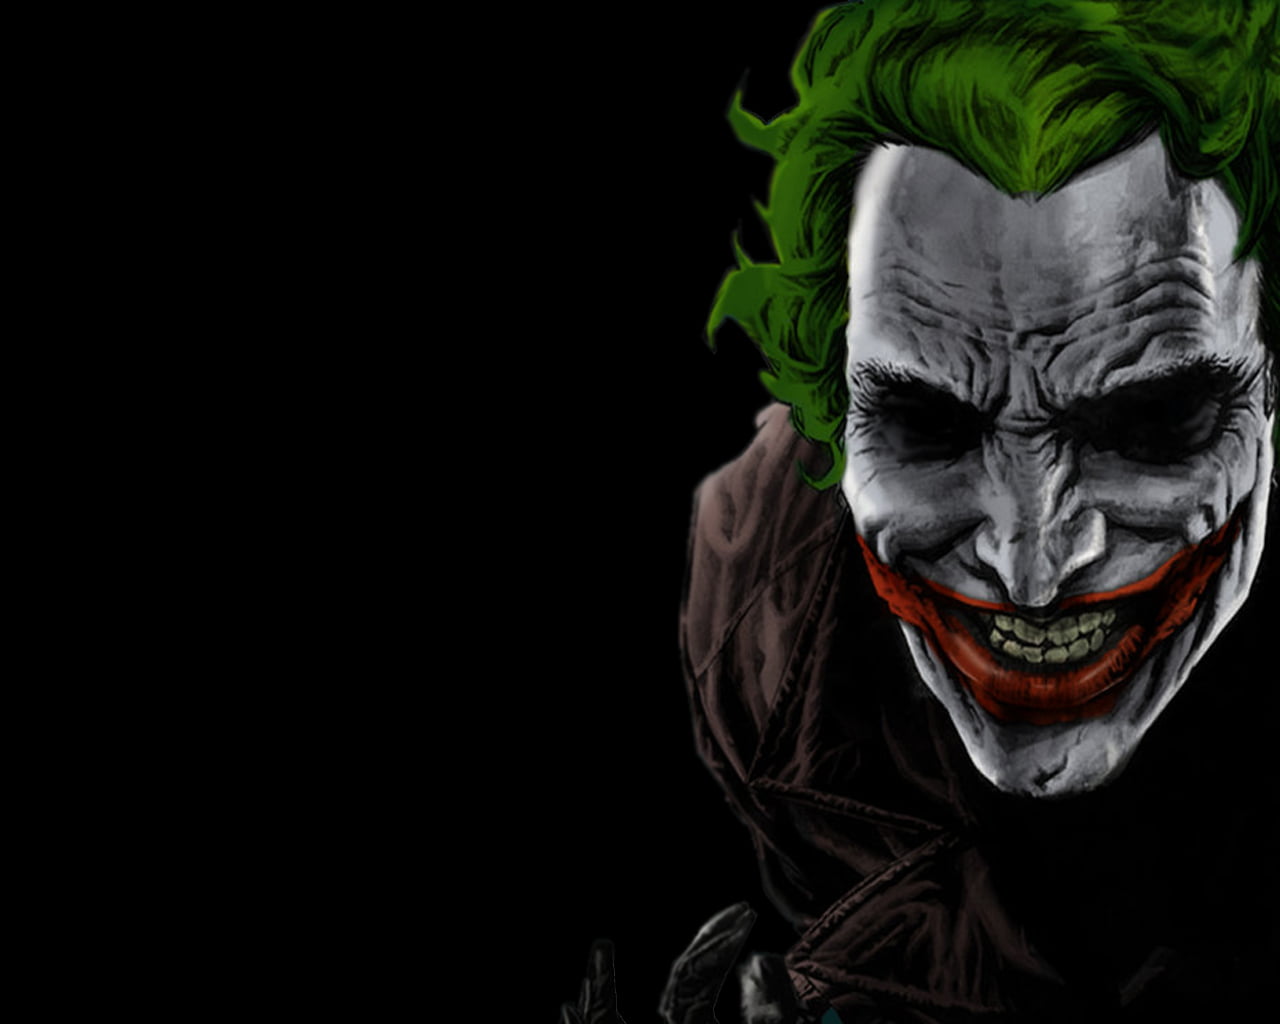 Download Gambar Joker Wallpaper Hd Animated terbaru 2020